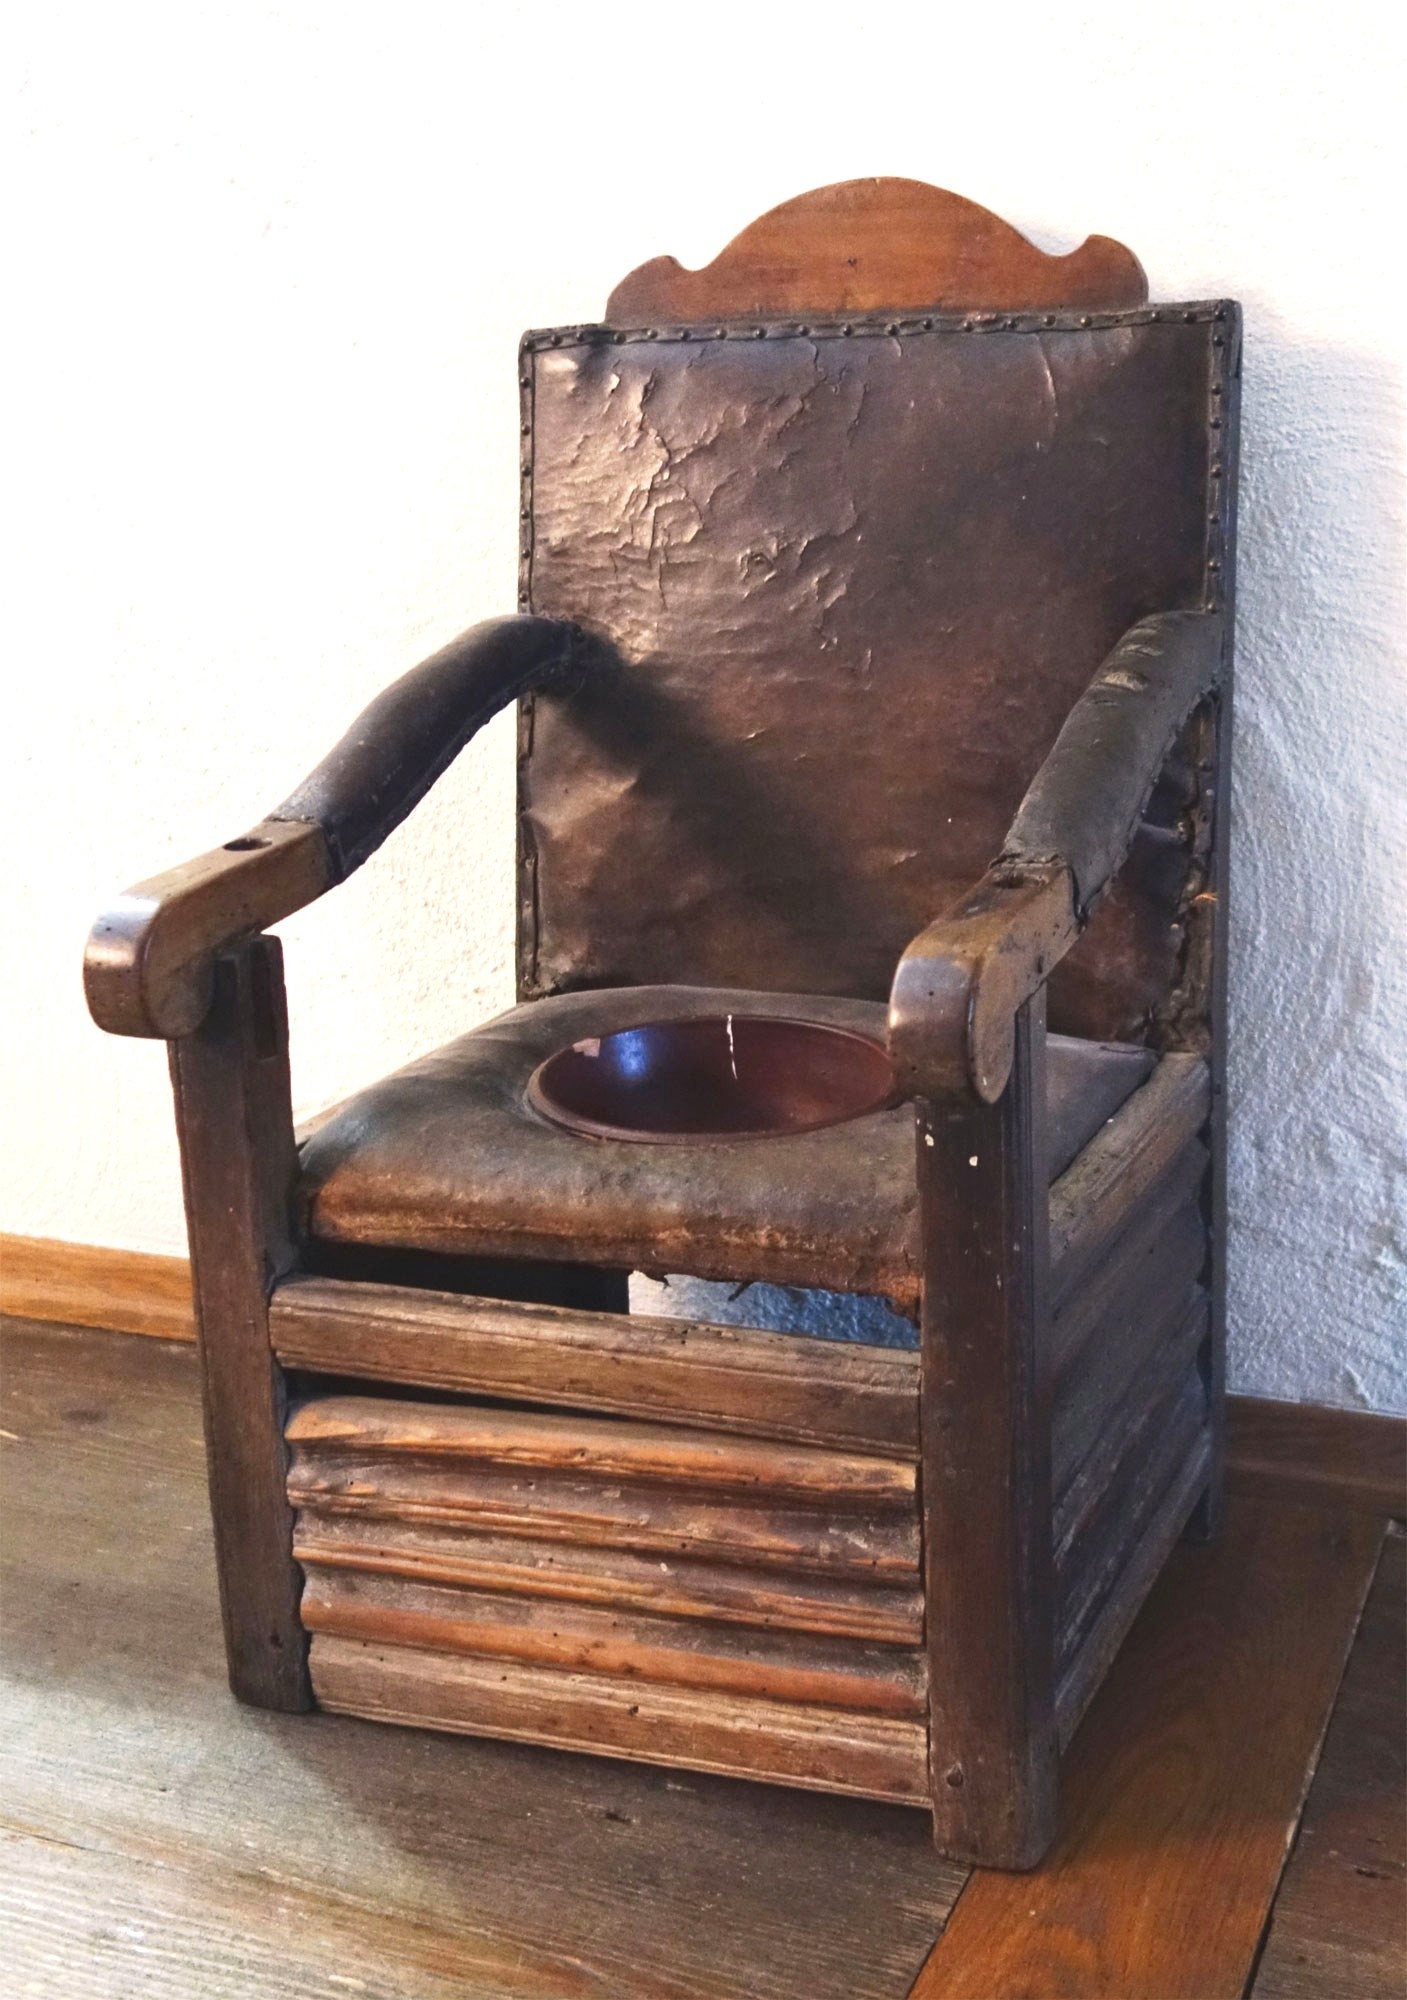 Kinderstuhl mit Toilettenfunktion (Städtisches Museum Welzheim CC BY)